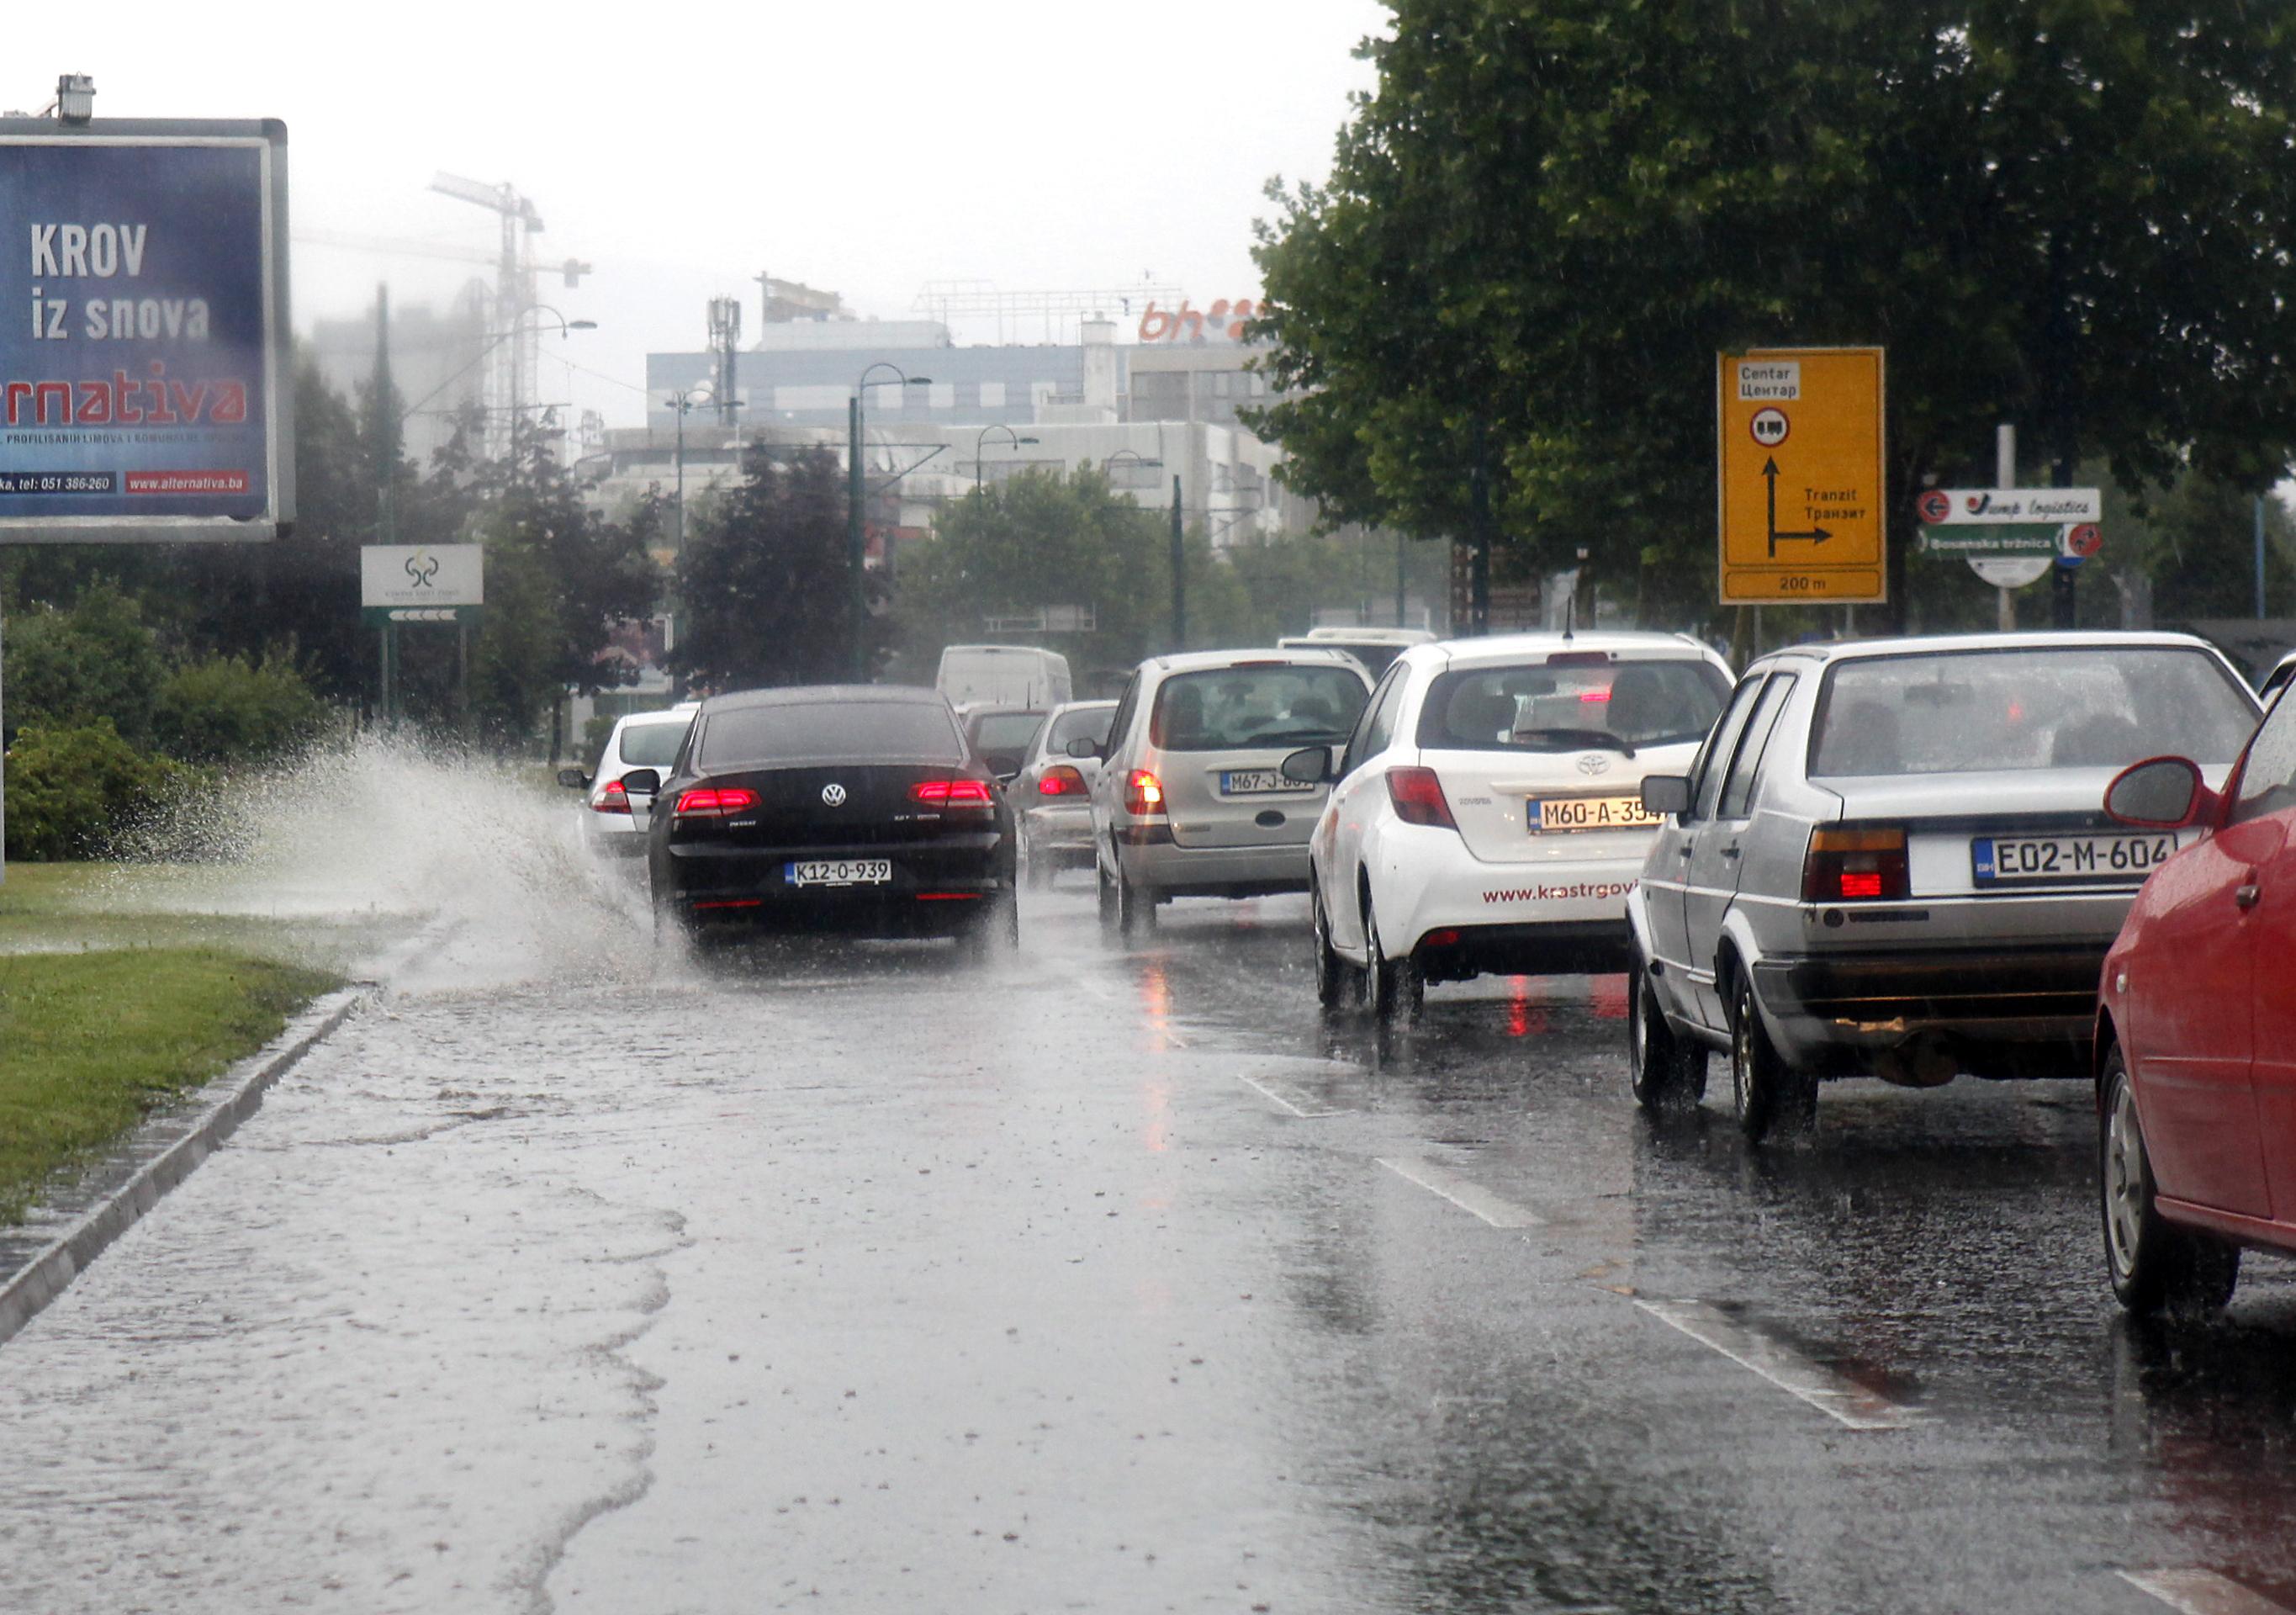 BIHAMK: Savjetujemo oprezniju vožnju, prilagođenu padavinama